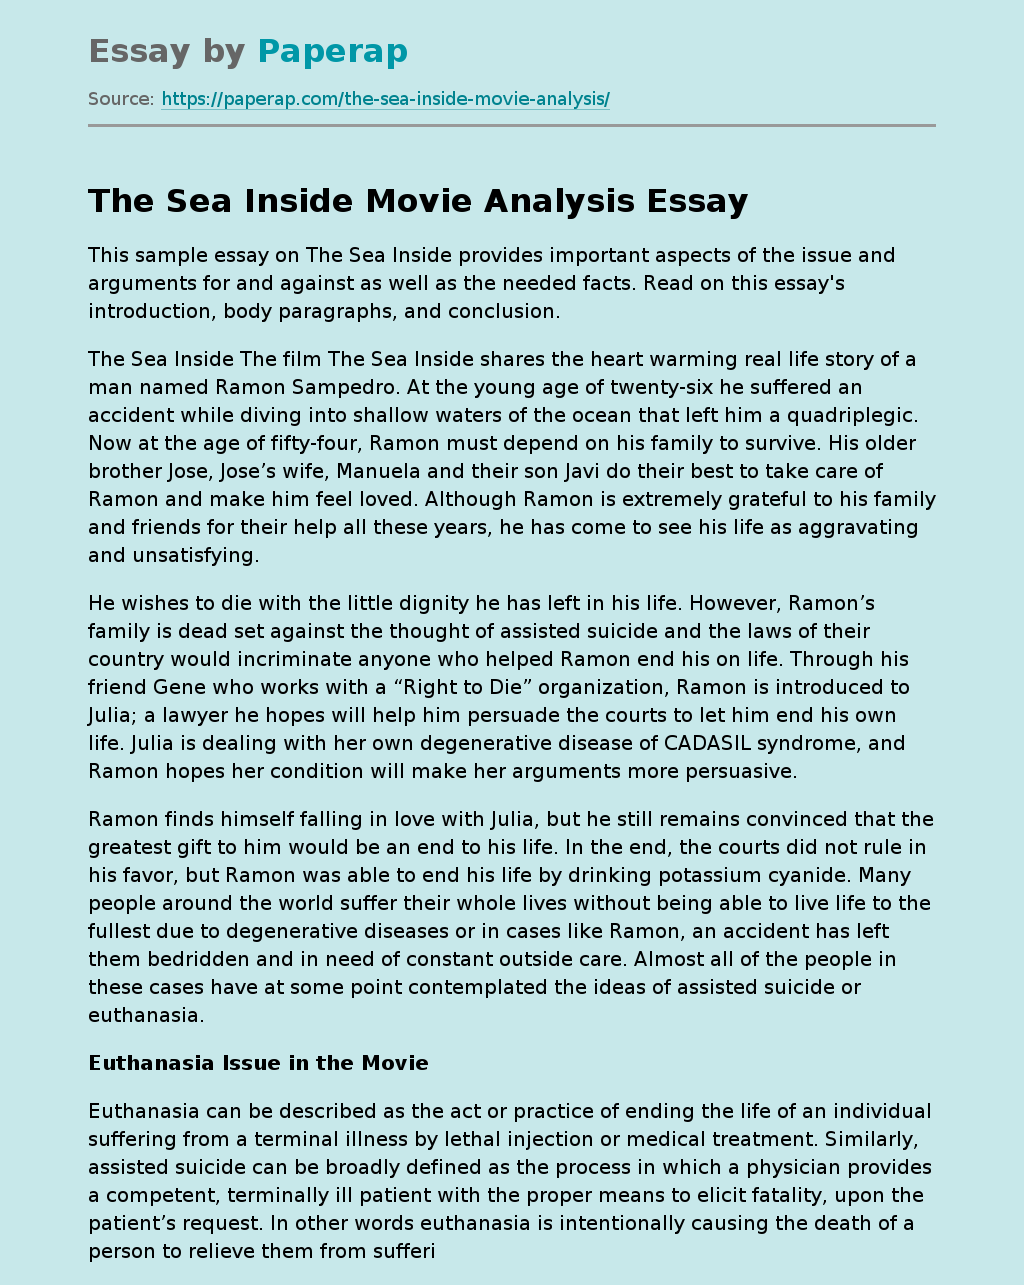 The Sea Inside Movie Analysis